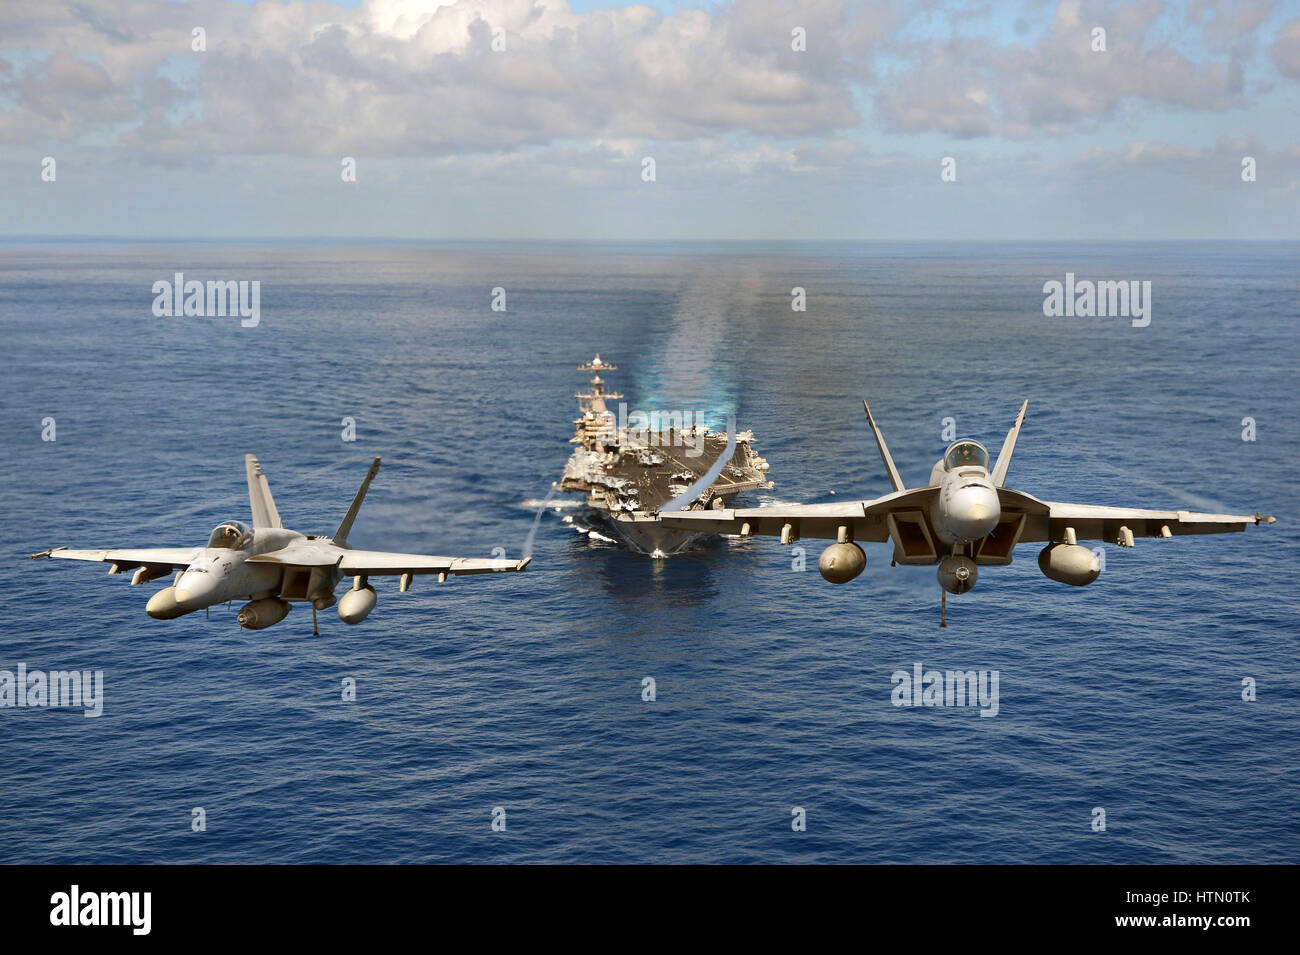 Stati Uniti Navy F/A-18 Super Hornet fighter aircraft volare in formazione di fronte all'USN Nimitz-class portaerei USS John C. Stennis Aprile 24, 2013 nell'Oceano Pacifico. Foto Stock